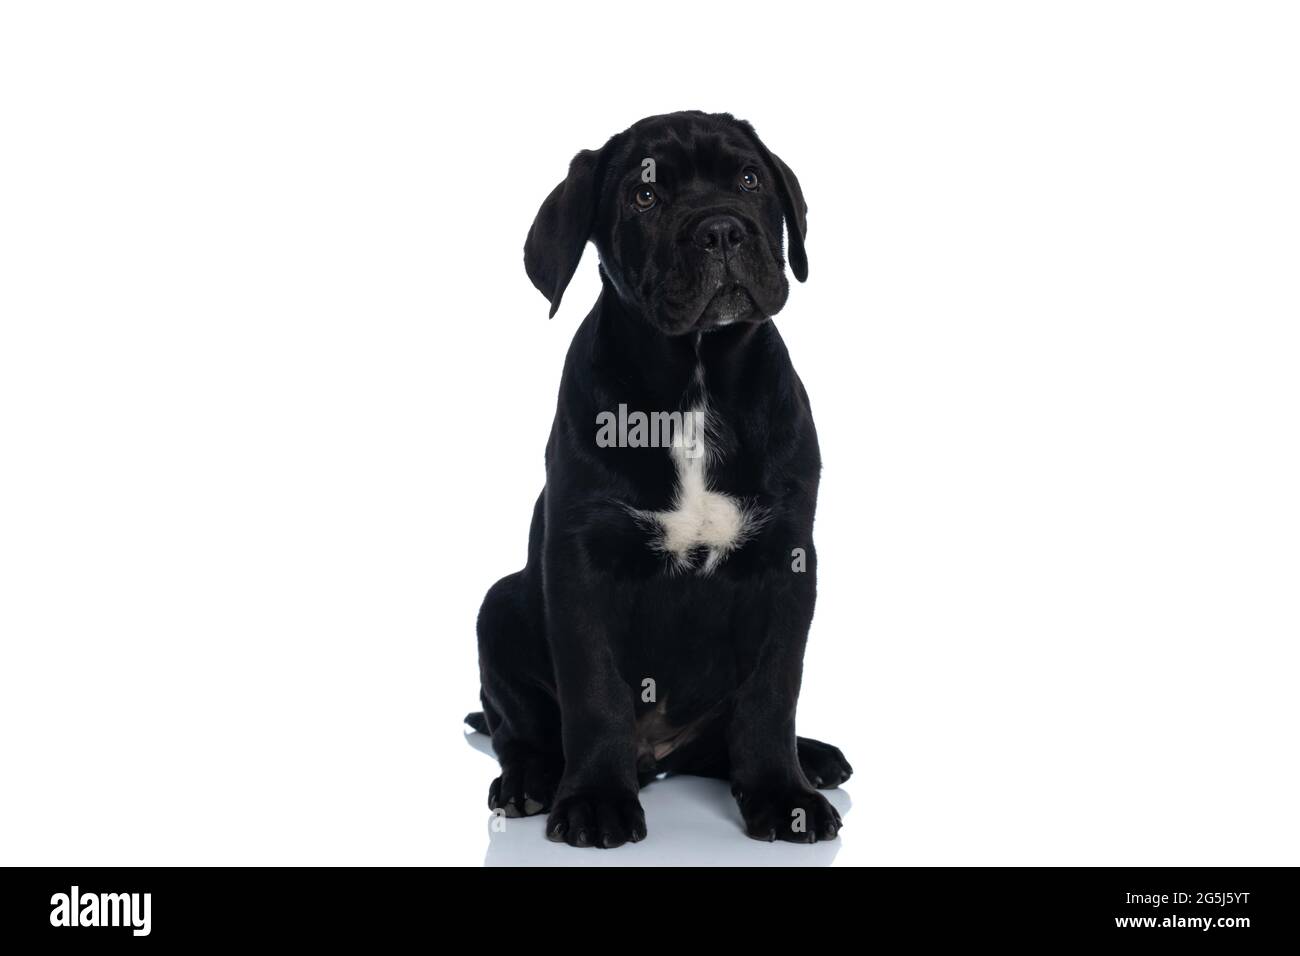 Niedlicher Cane corso Hund sitzt und sich wie ein guter Hund vor weißem Hintergrund verhält Stockfoto